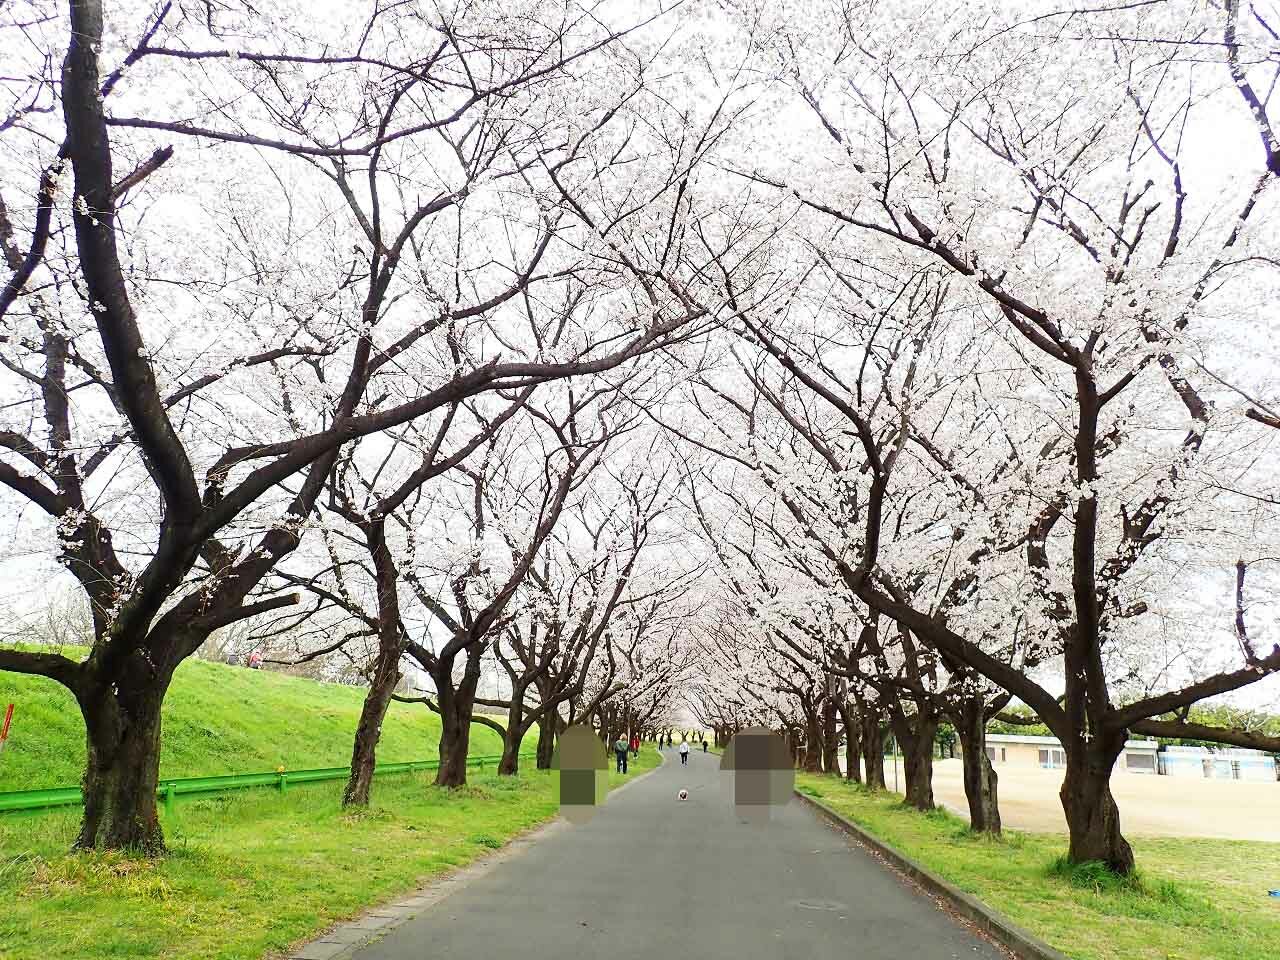 この日の天気は曇りでした。桜の写真撮影は難しくて、このように白く写ってしまいがちなのですが、肉眼ではまさに桜色で、これぞ「桜並木」という美しさでした